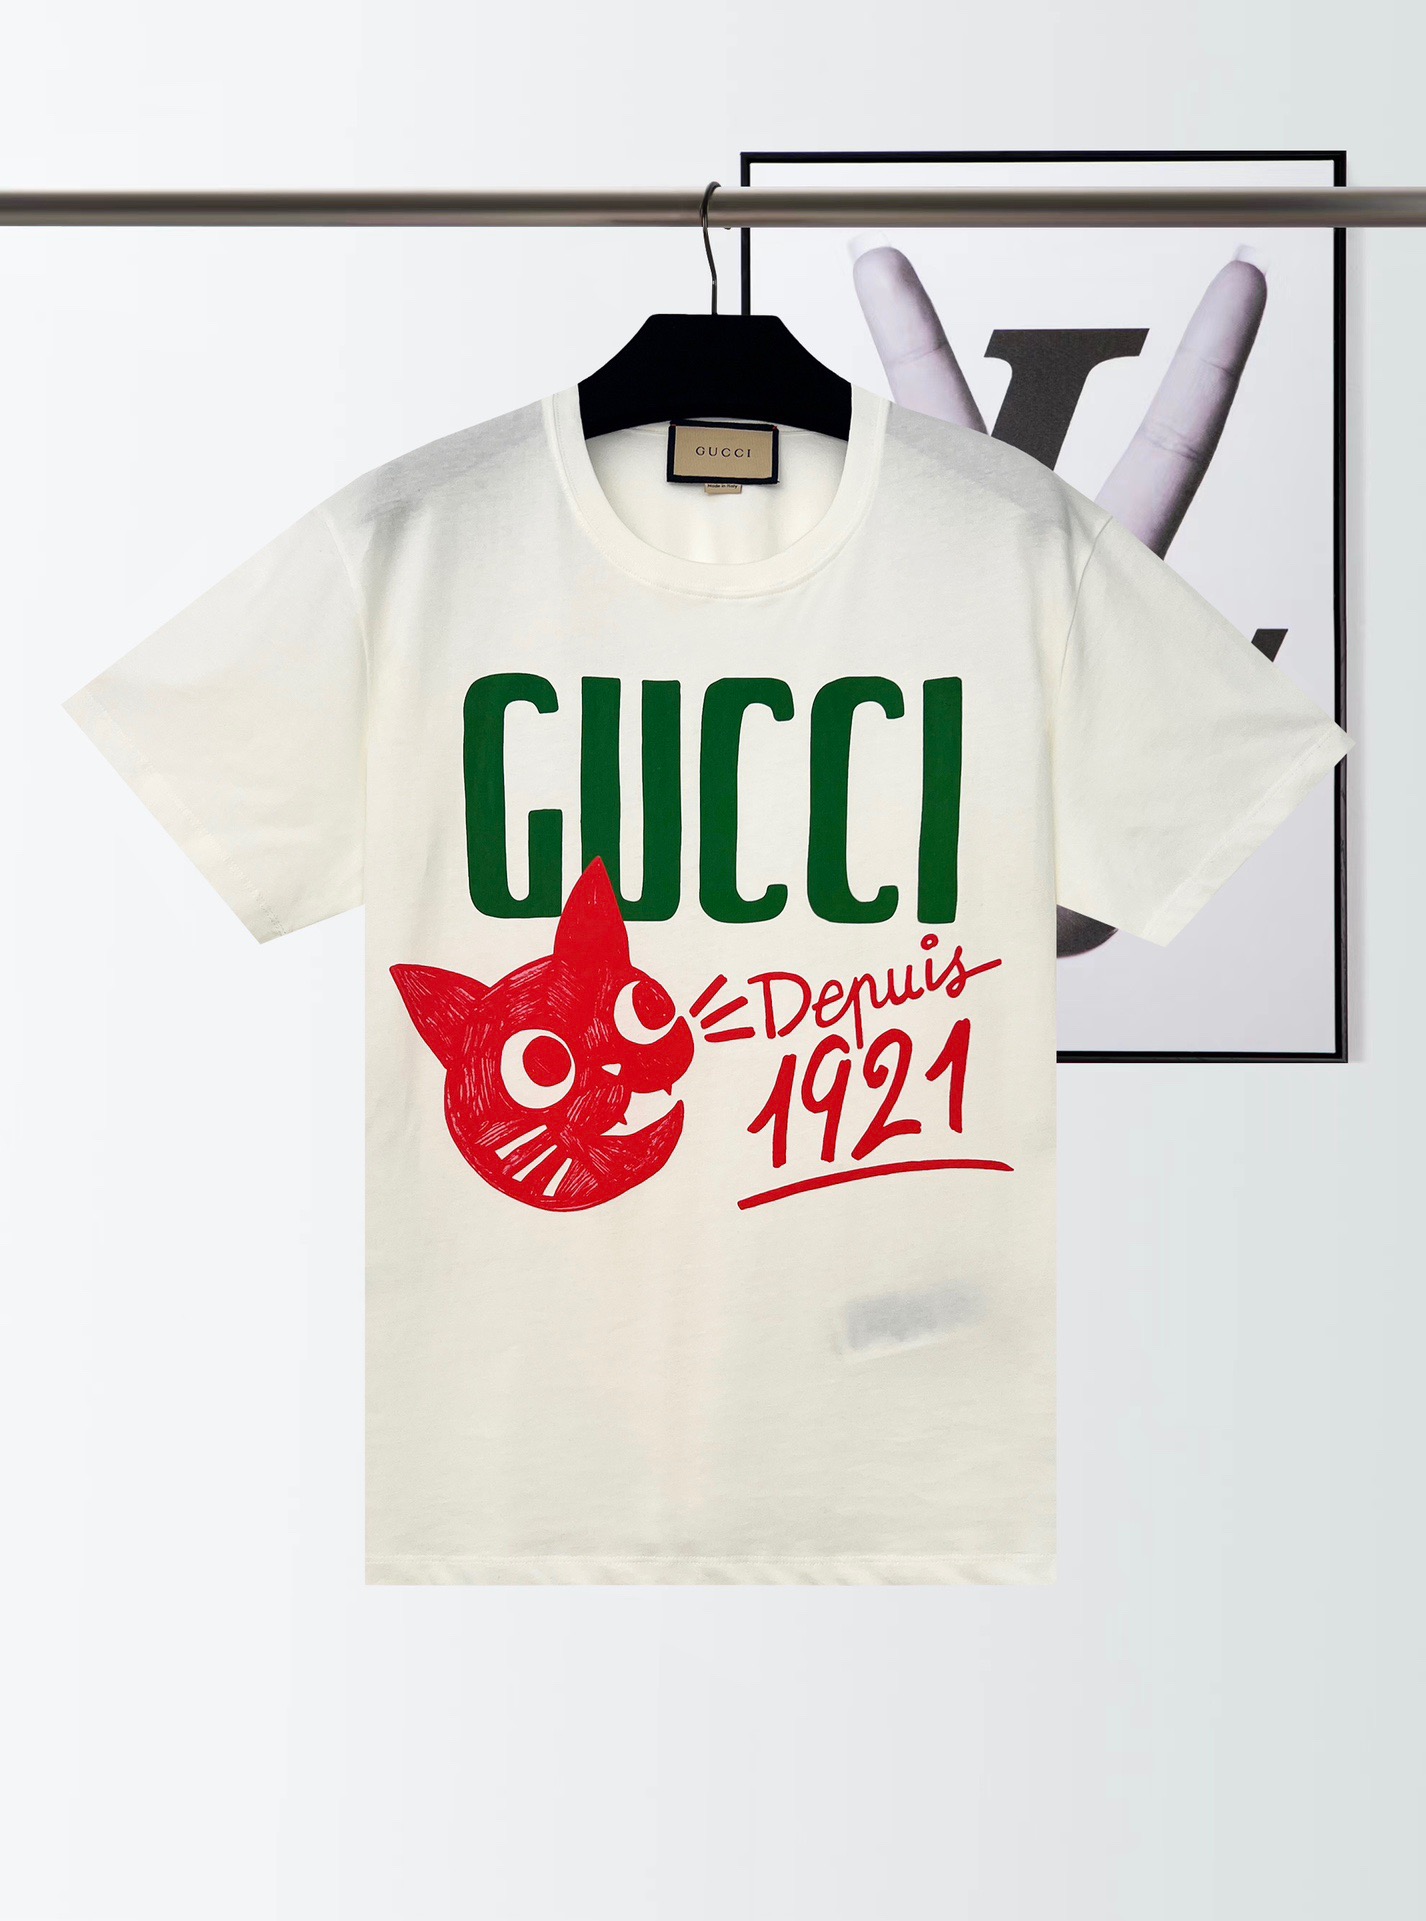 Gucci 1921 CAT コットンTシャツ 緑